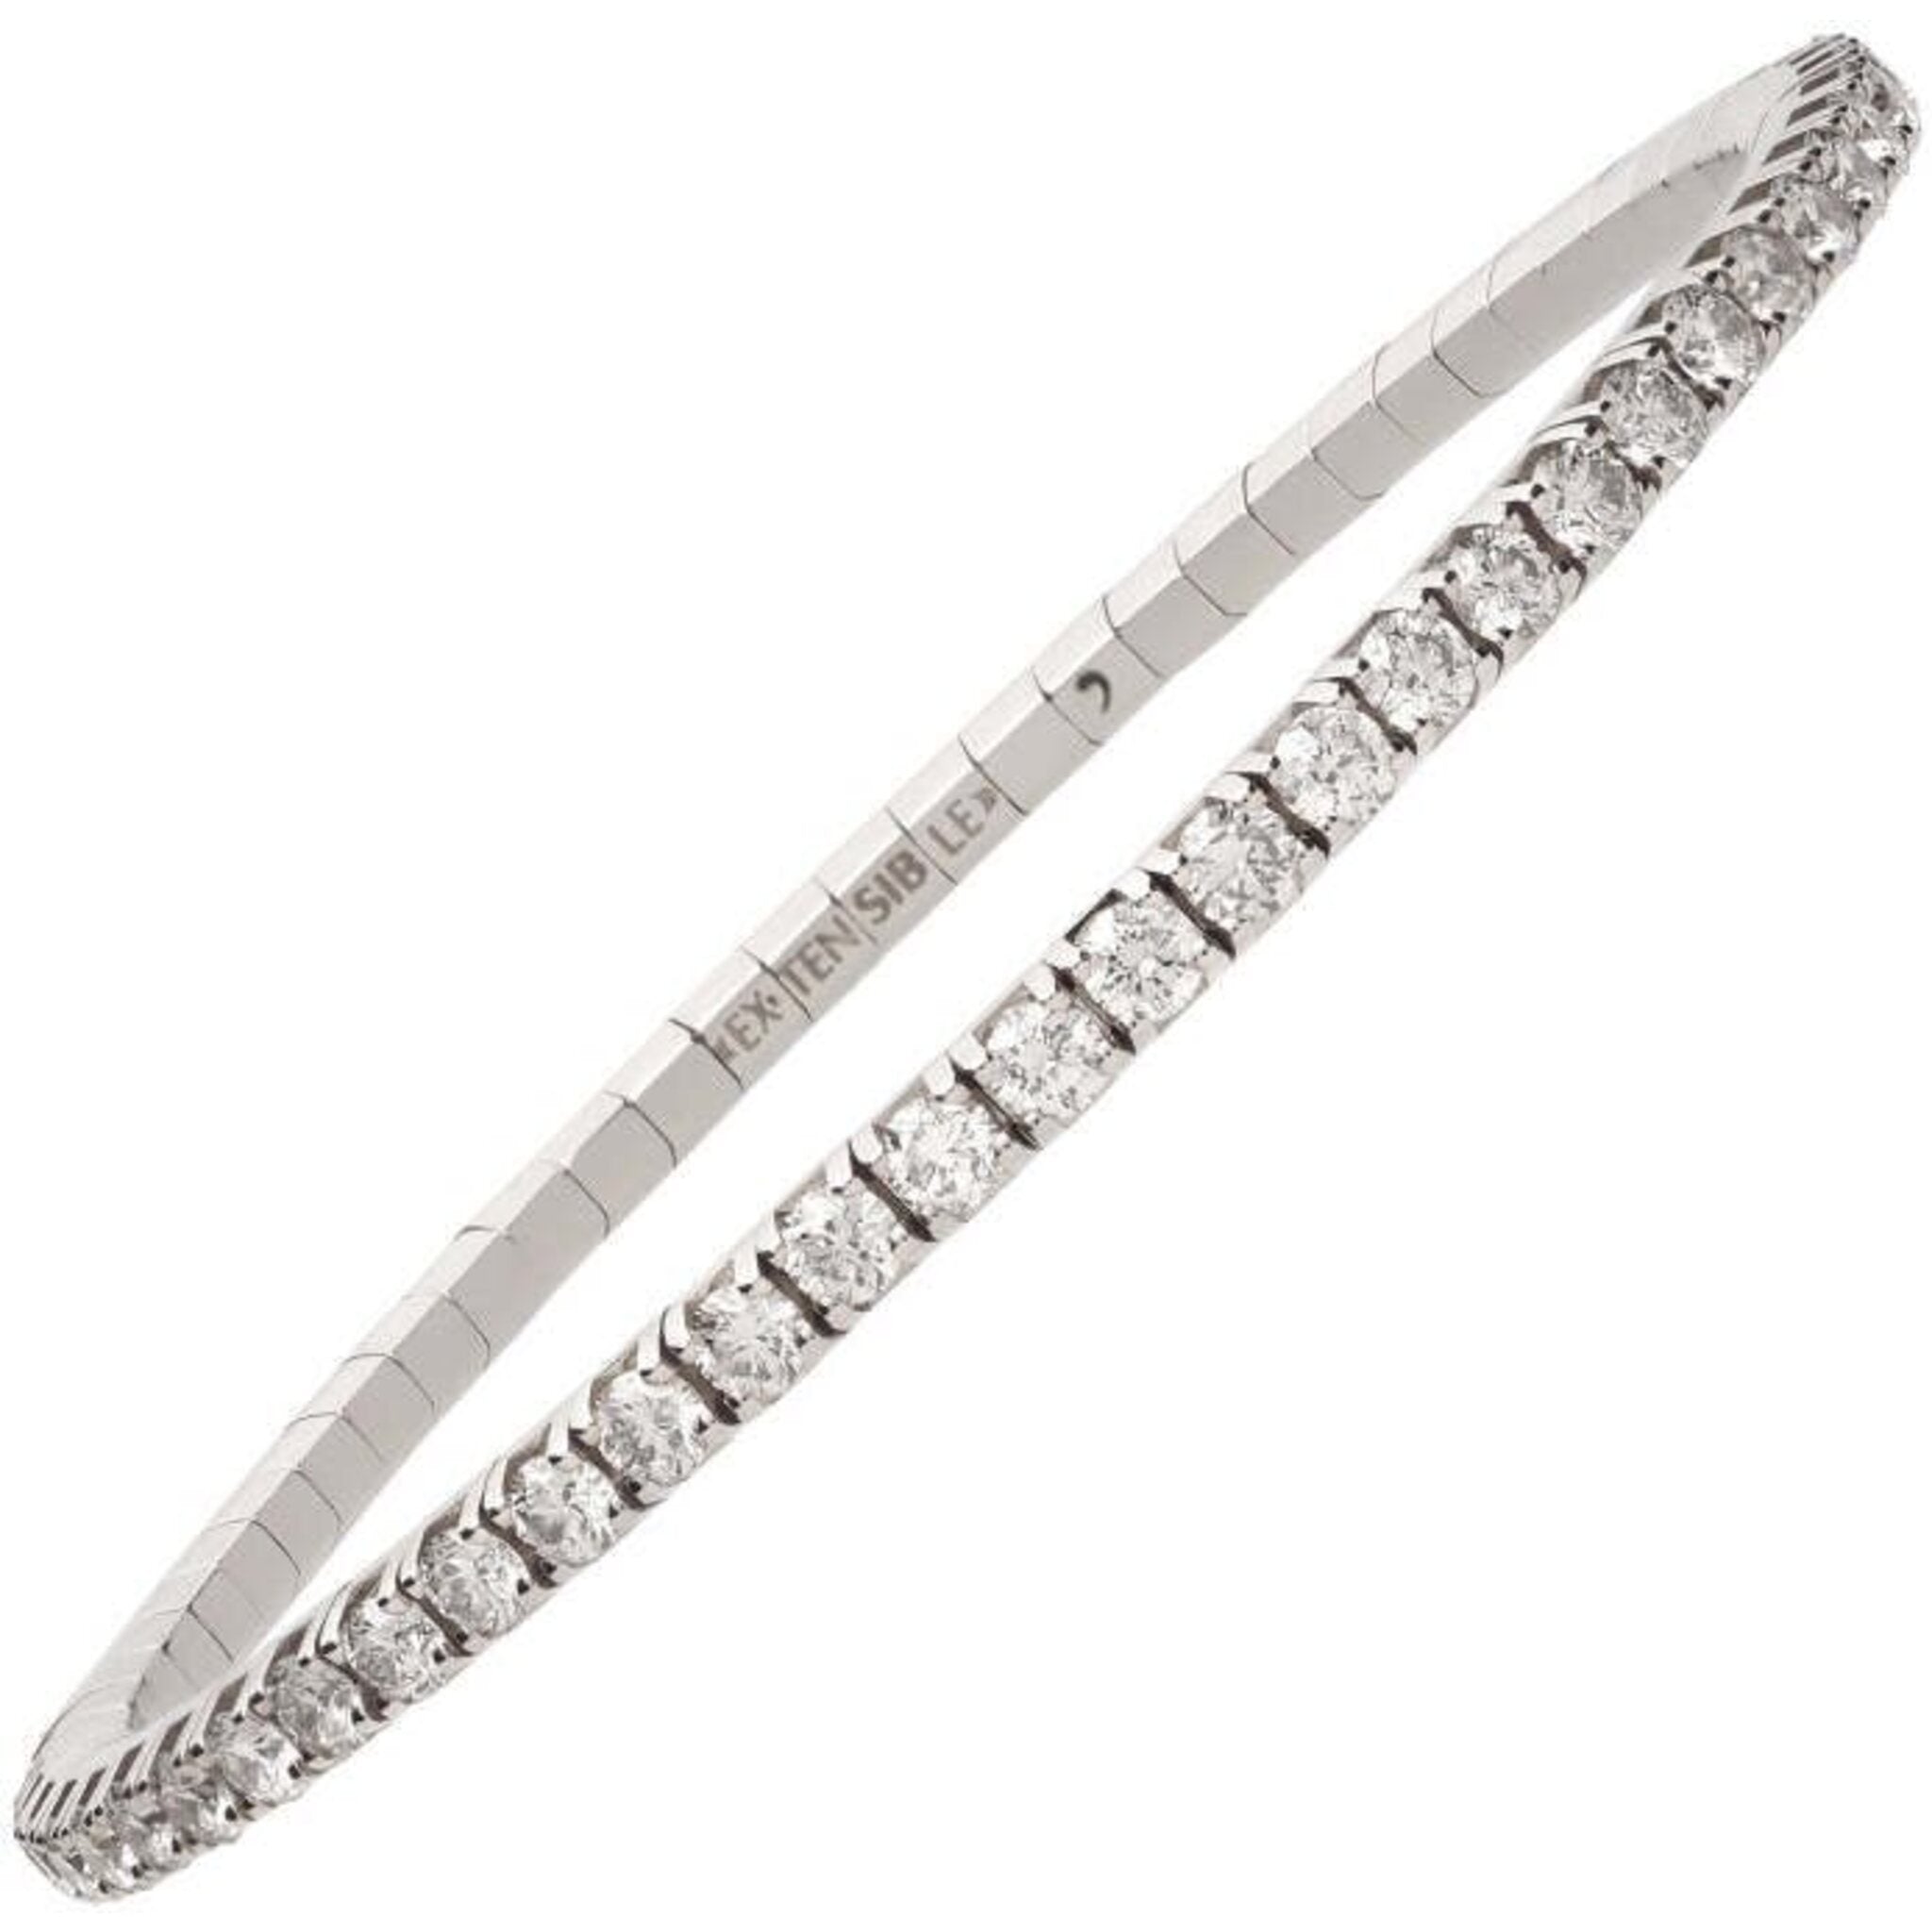 18 kt White Gold Diamond Bracelet Tennis Bracelet 4.79 Carat Lab Grown  White Pave Diamond Bracelet at Rs 138999 | Diamond Bracelets in Gurugram |  ID: 2852904269648